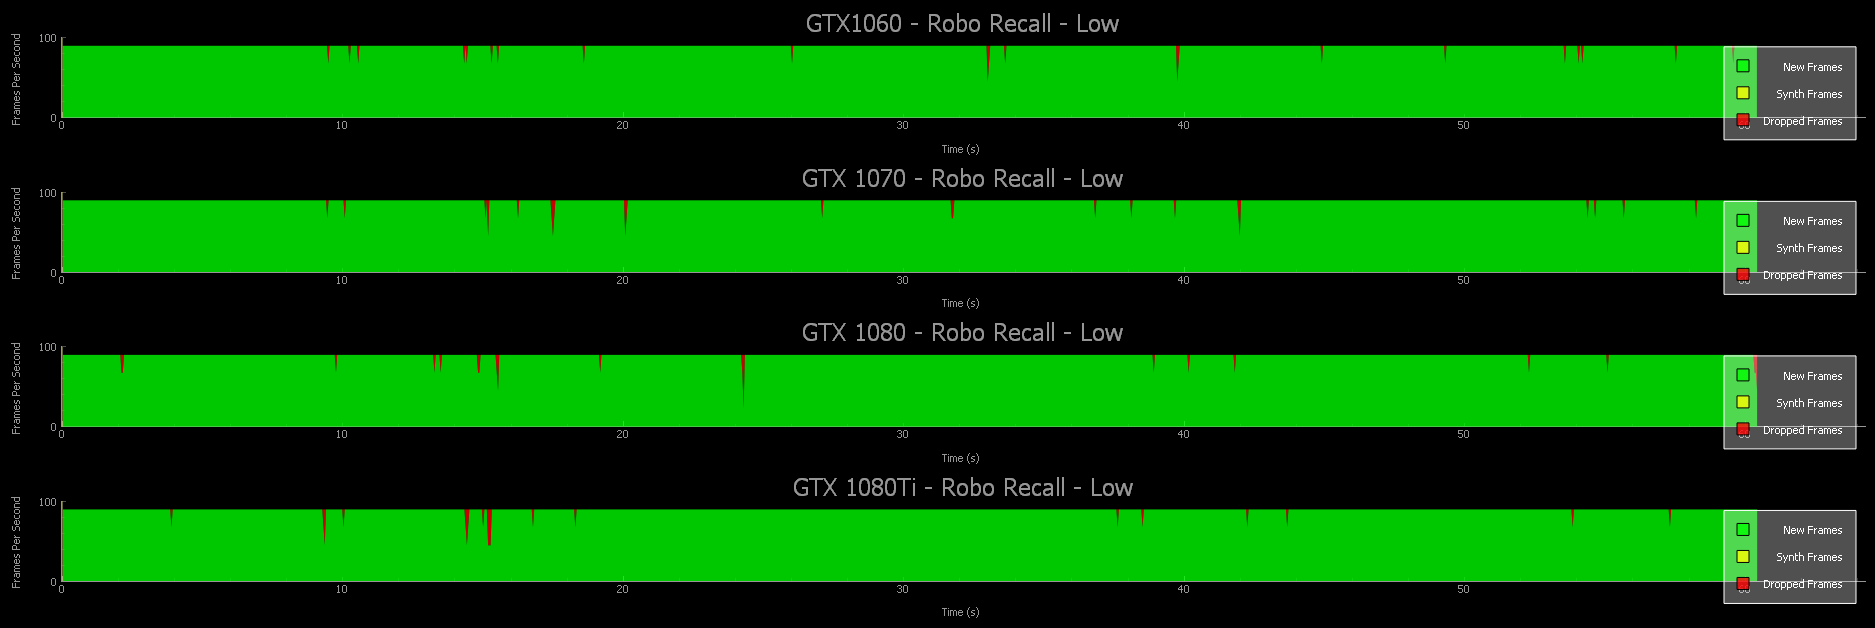 GTX 1080 Ti, 1080, 1070, 1060, and AMD 